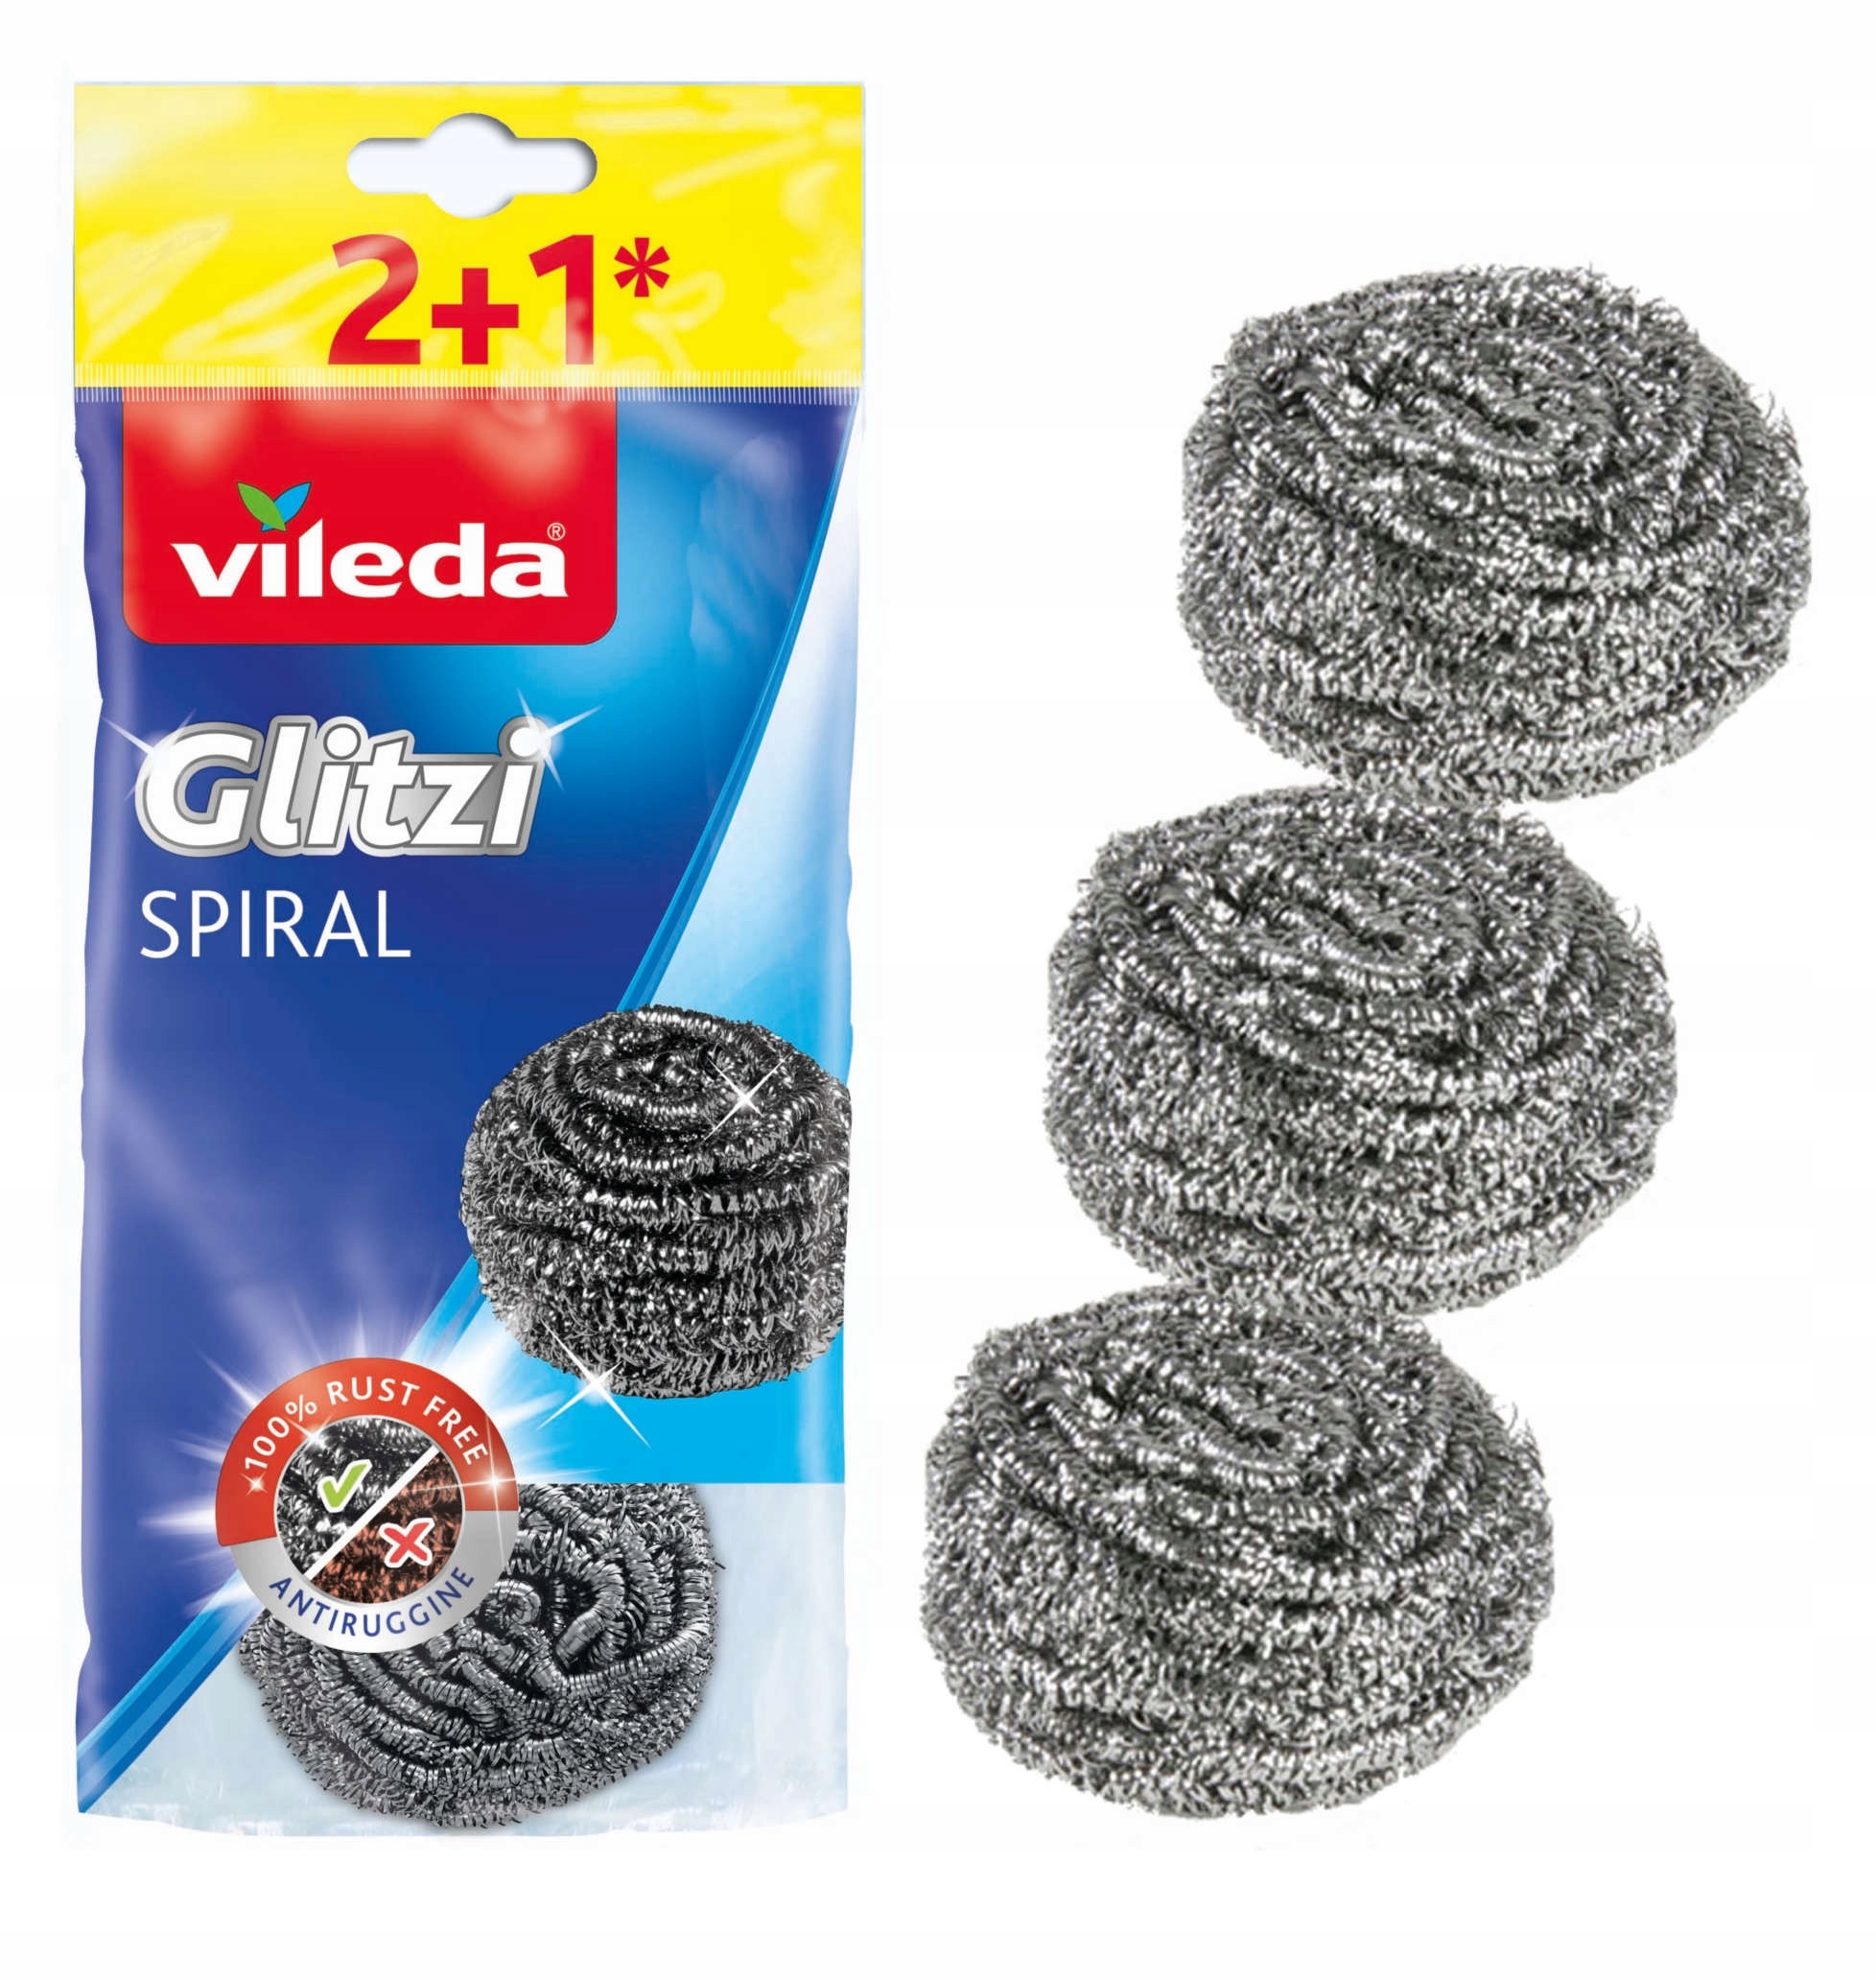 Комплект металлических спиральных губок Glitzi Spiral Vileda